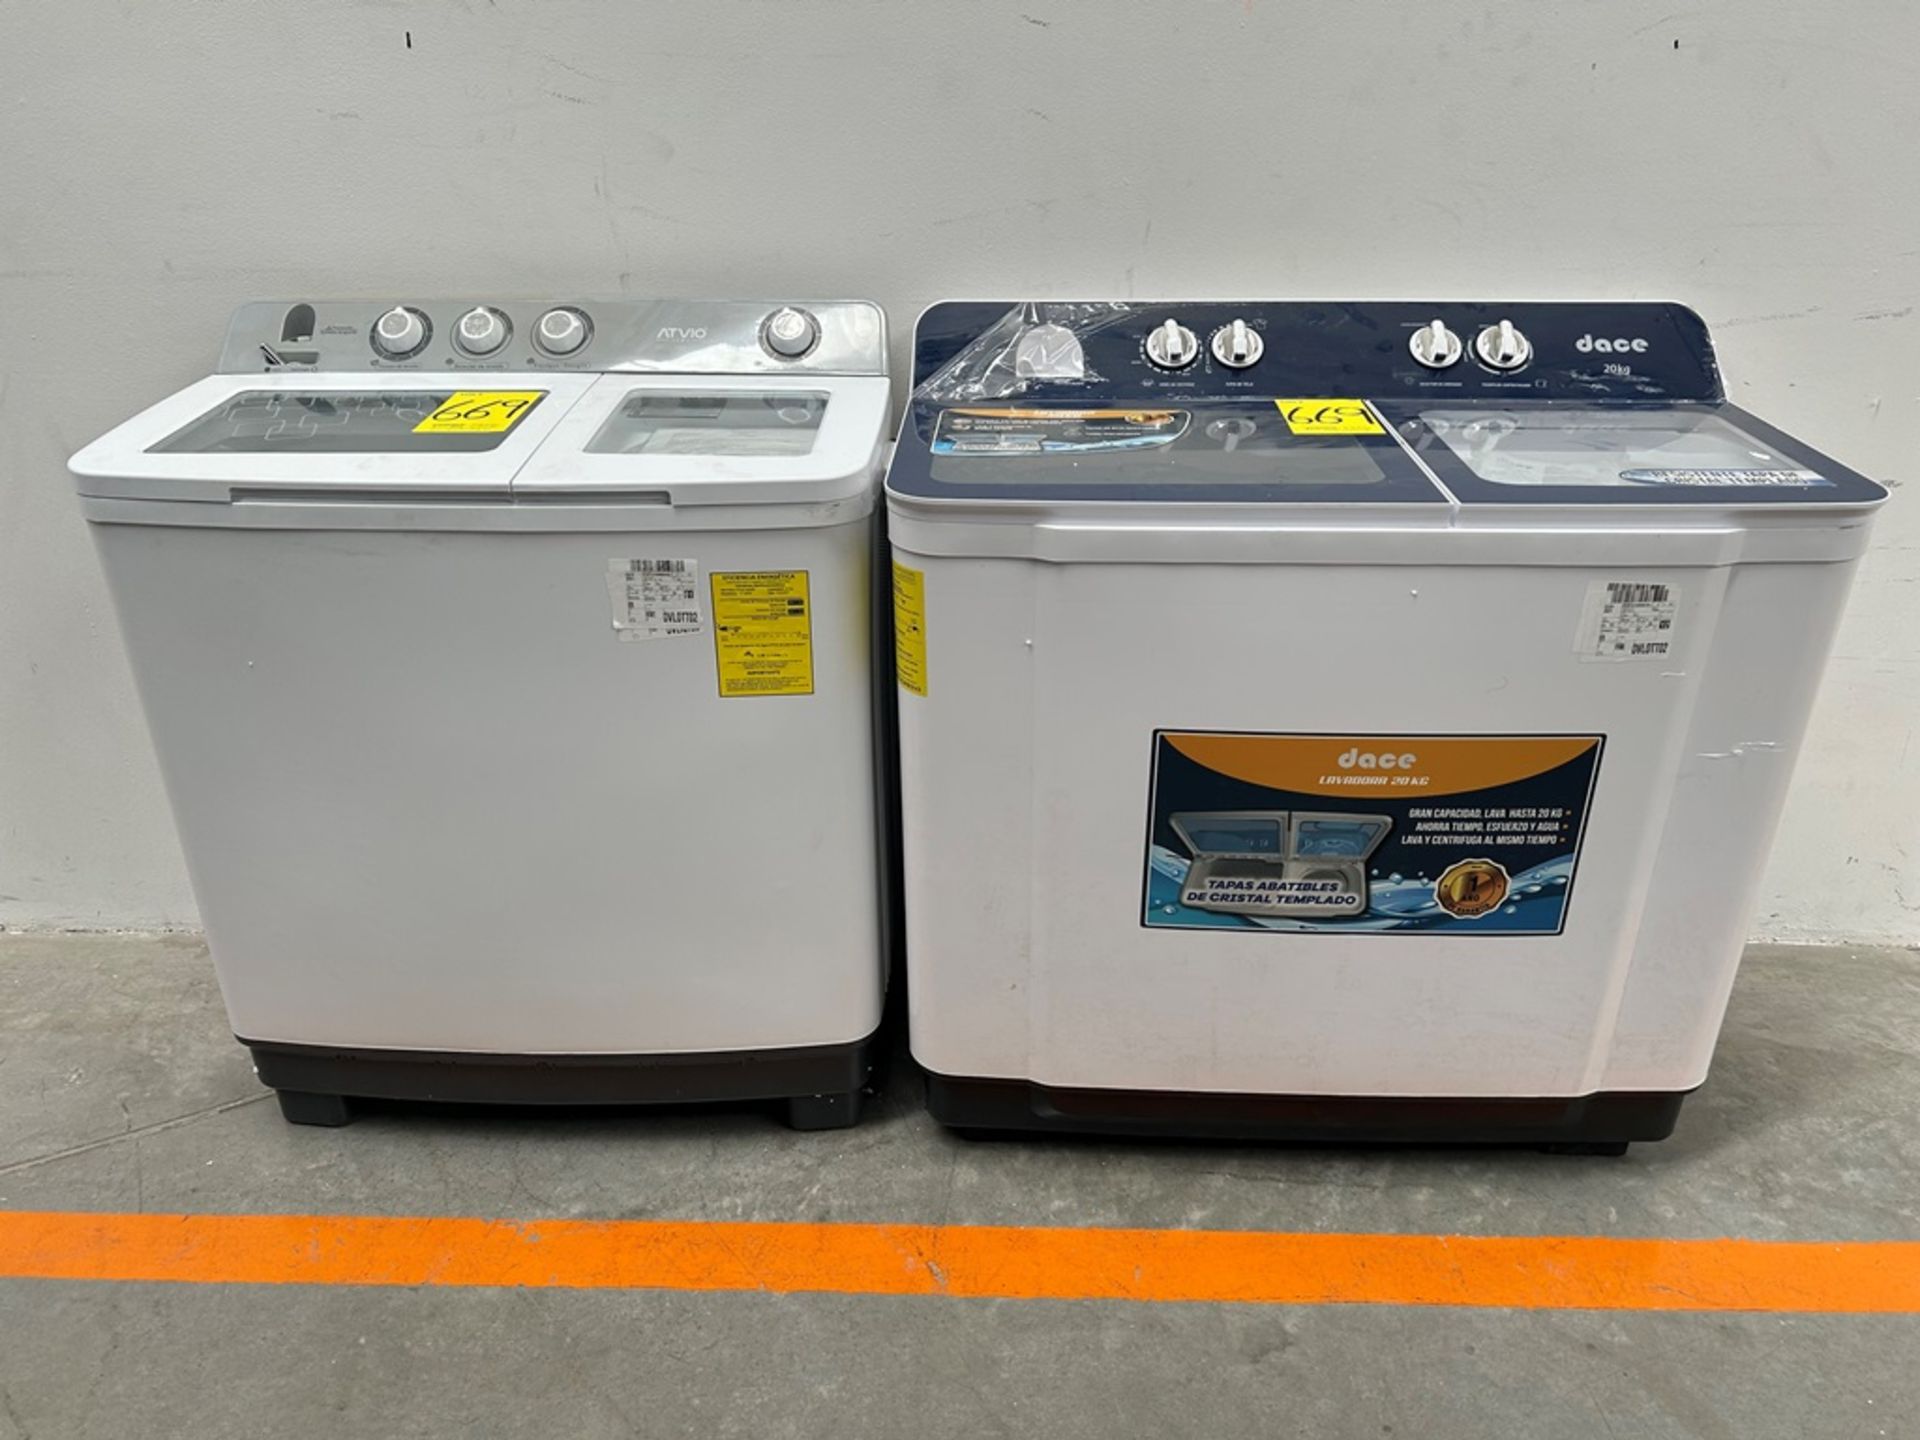 Lote de 2 lavadoras contiene: 1 Lavadora de 20 KG, Marca DACE, Modelo LS2002C, Serie 9669, Color BL